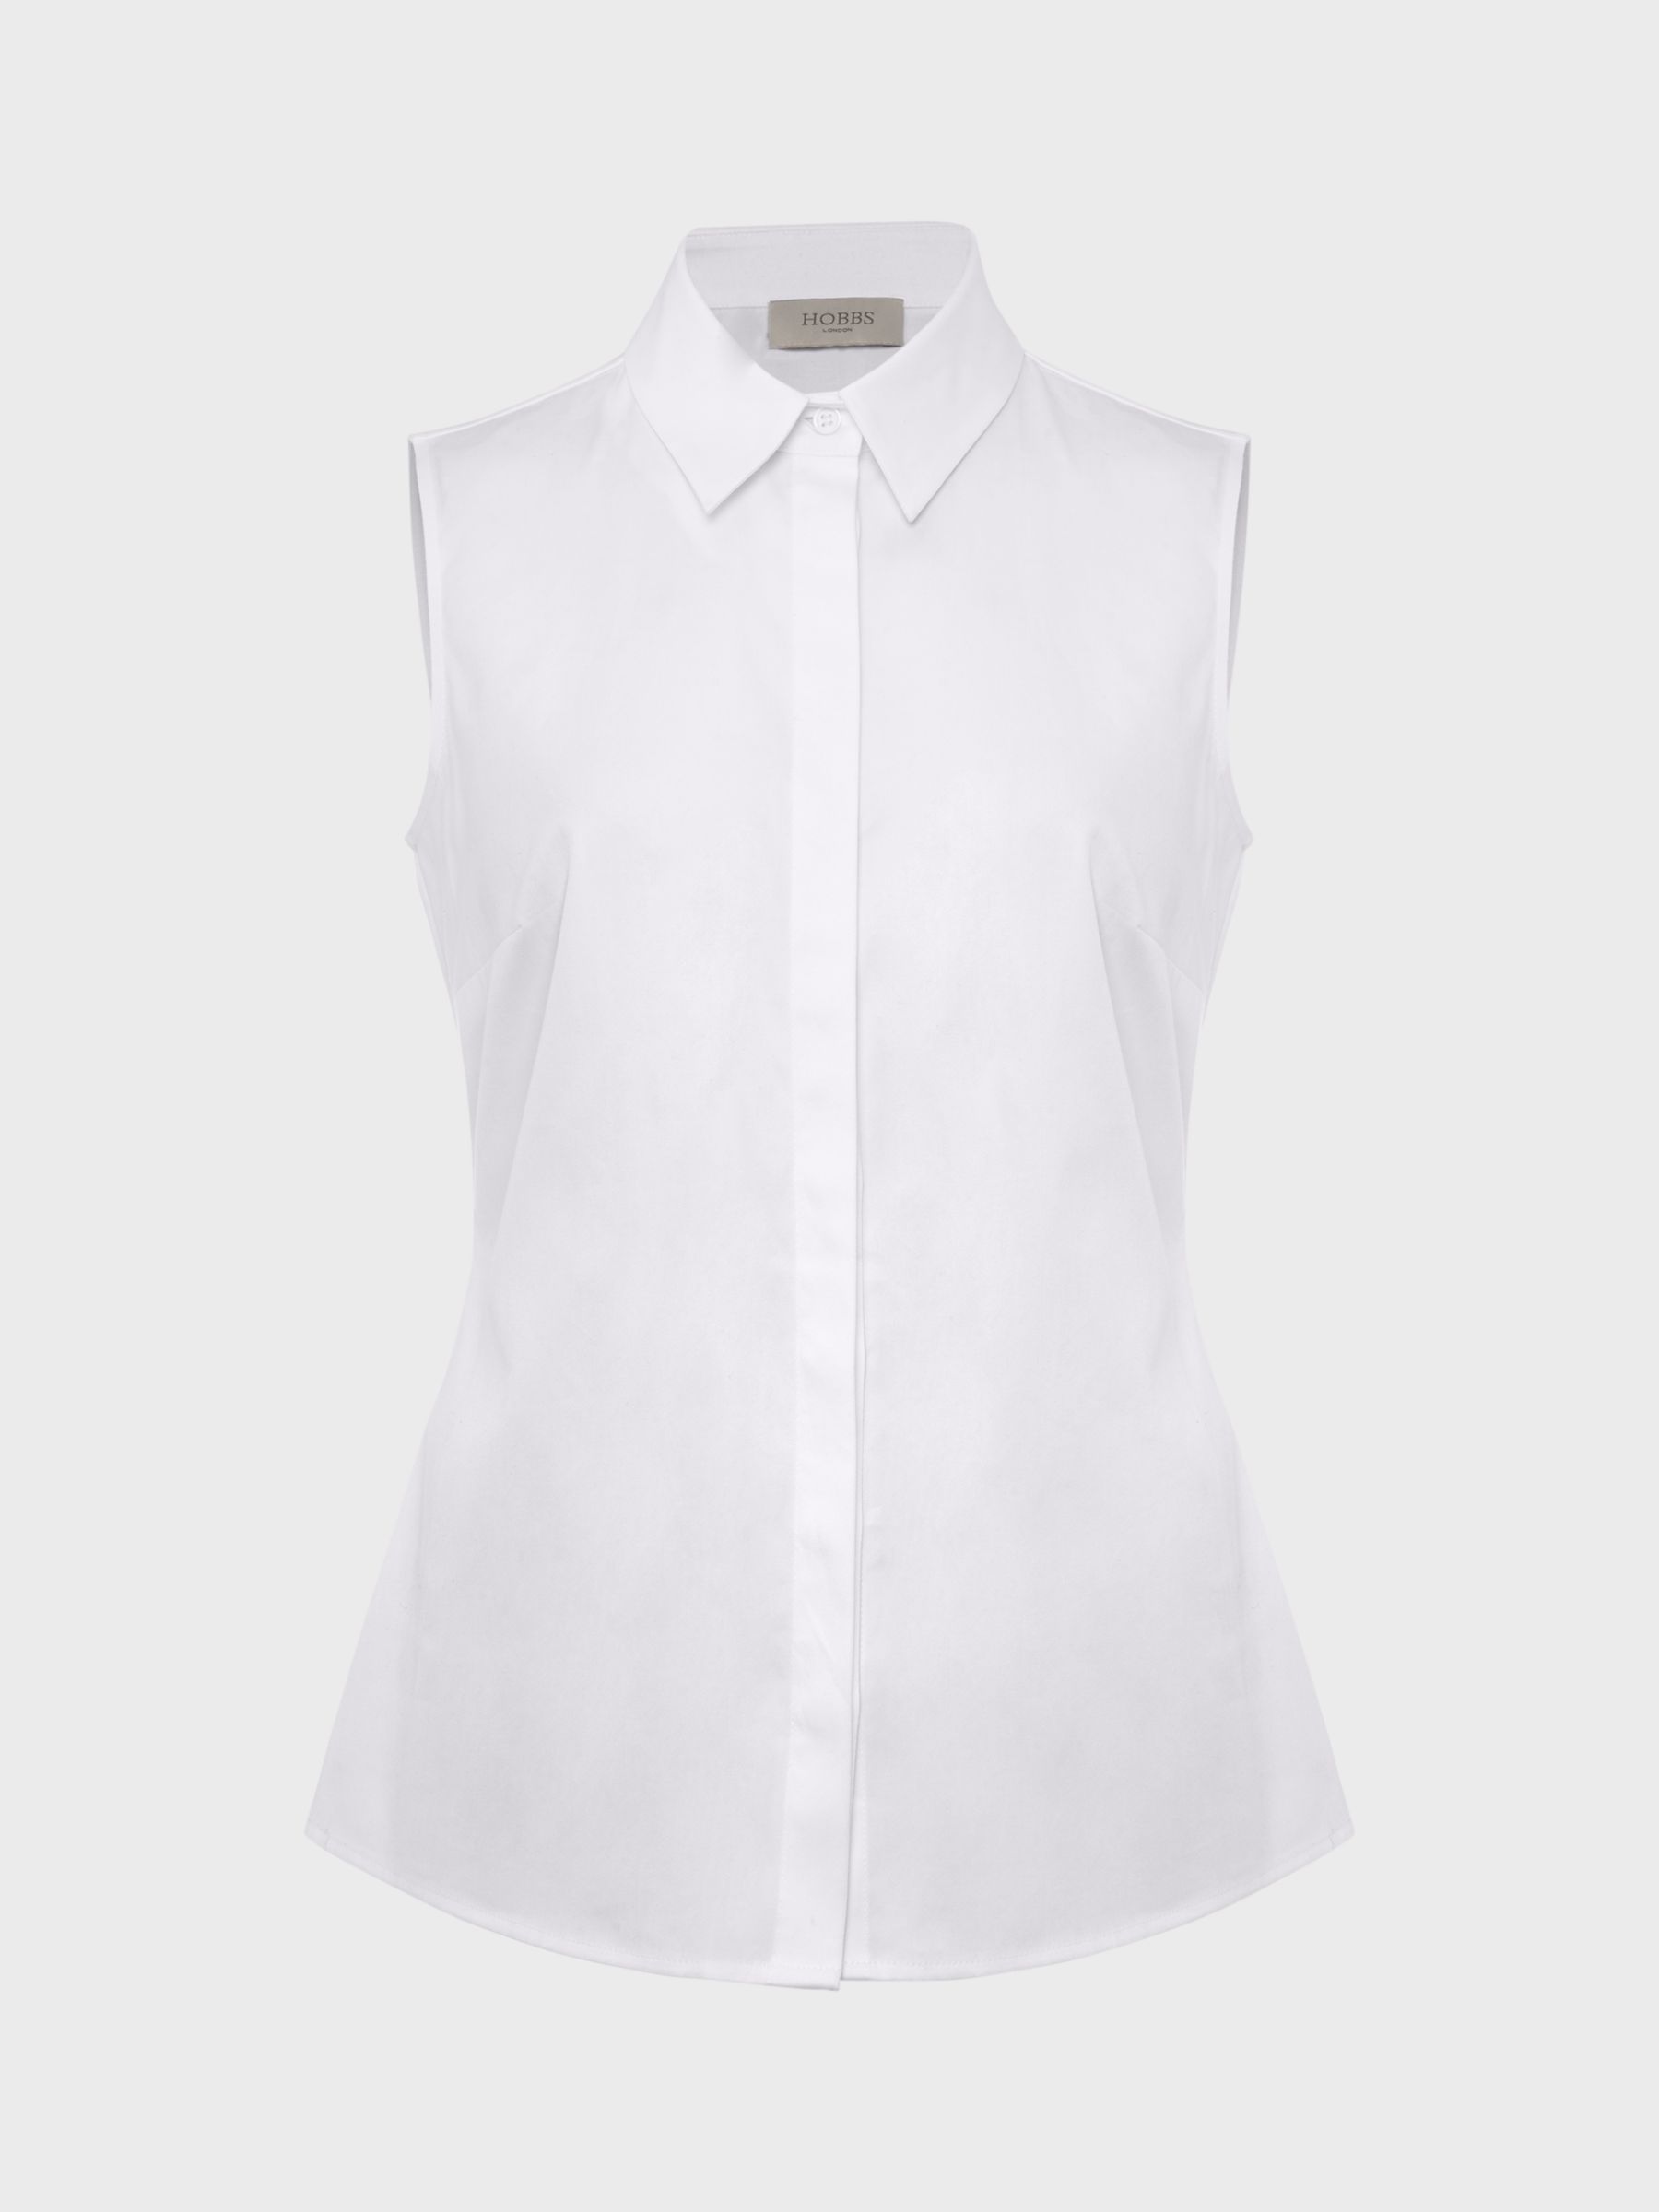 Hobbs Vic Sleeveless Shirt, White